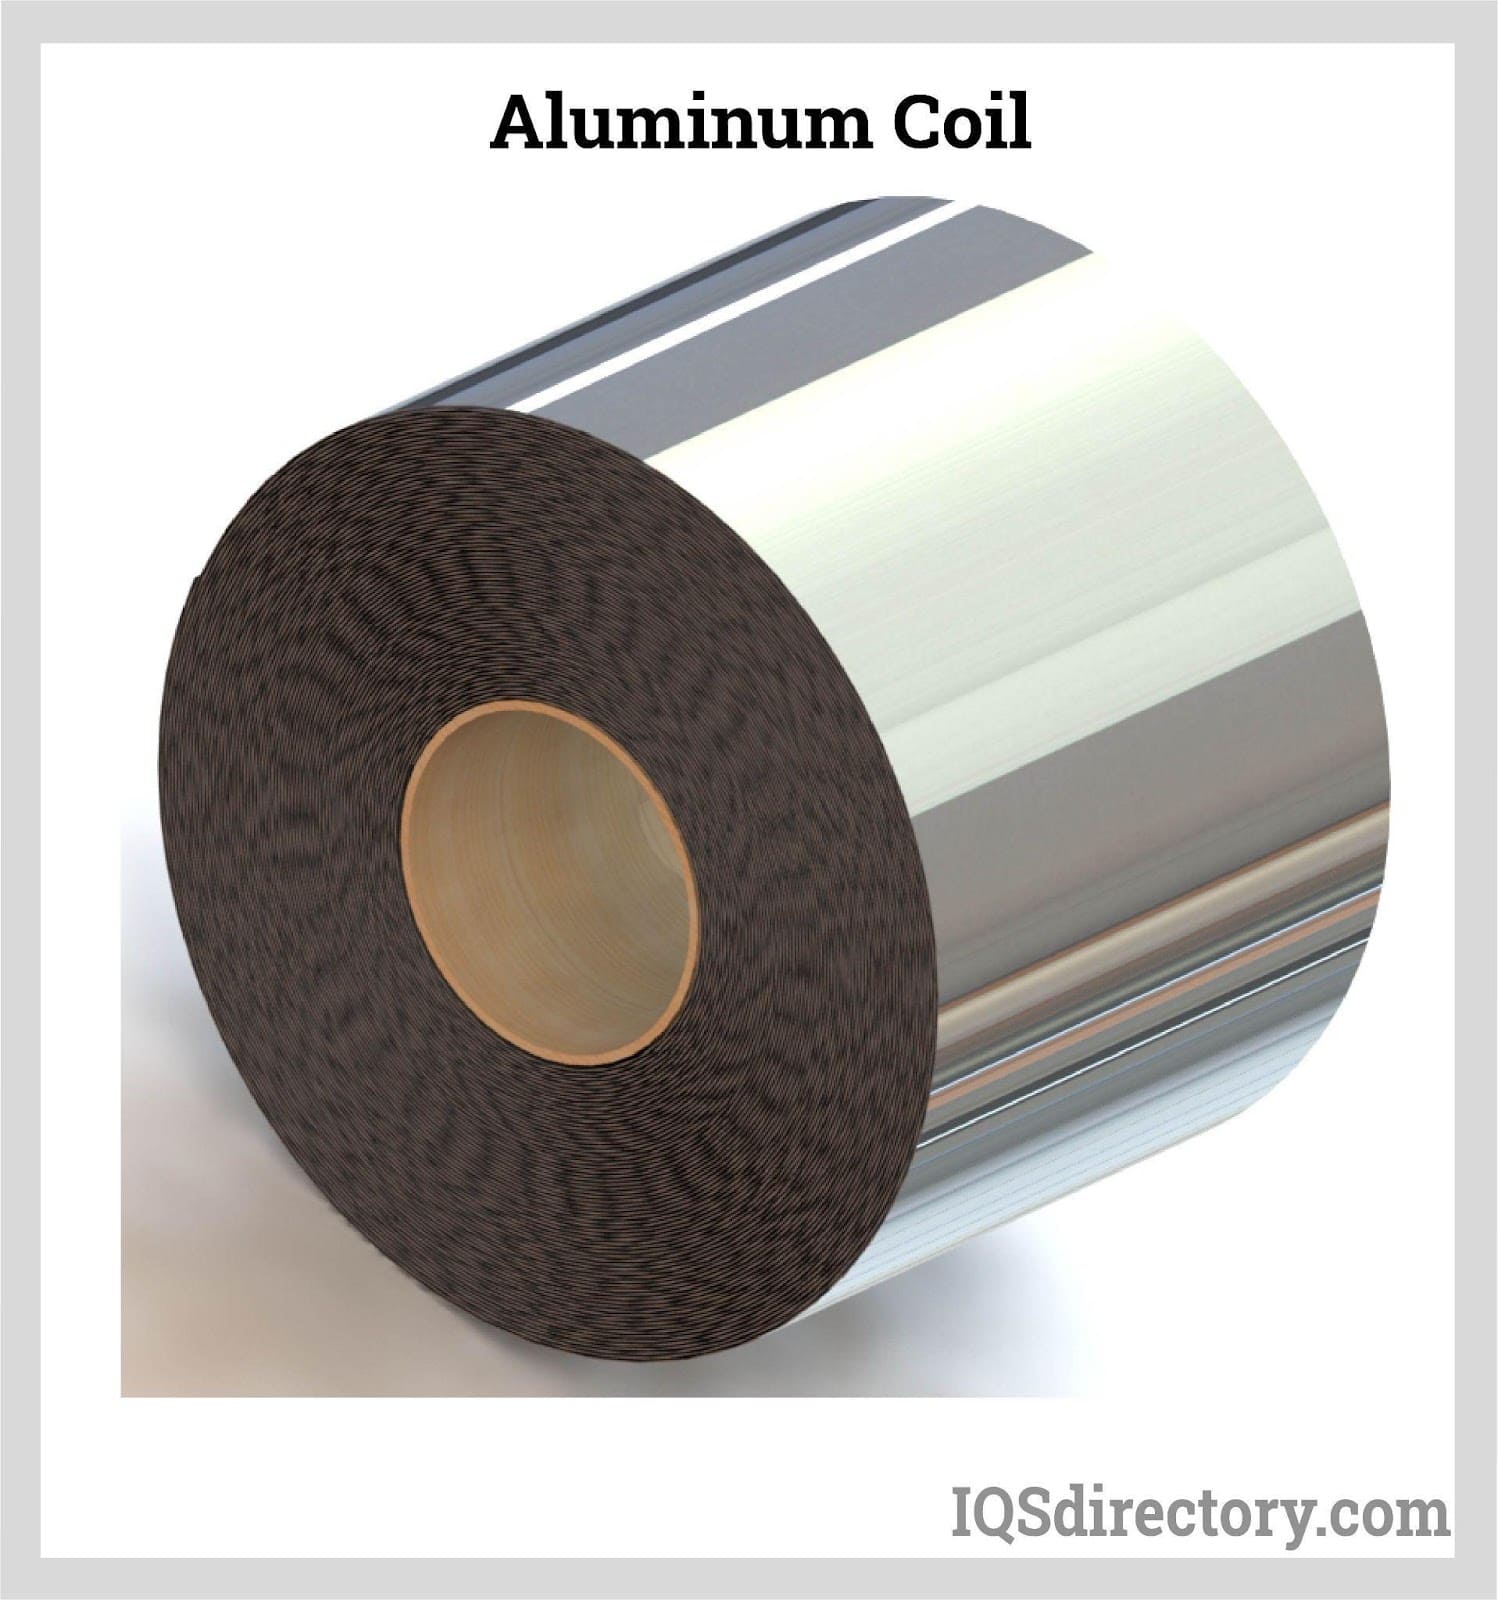 https://www.iqsdirectory.com/articles/aluminum-metal/aluminum-coil/aluminum-coil.jpg